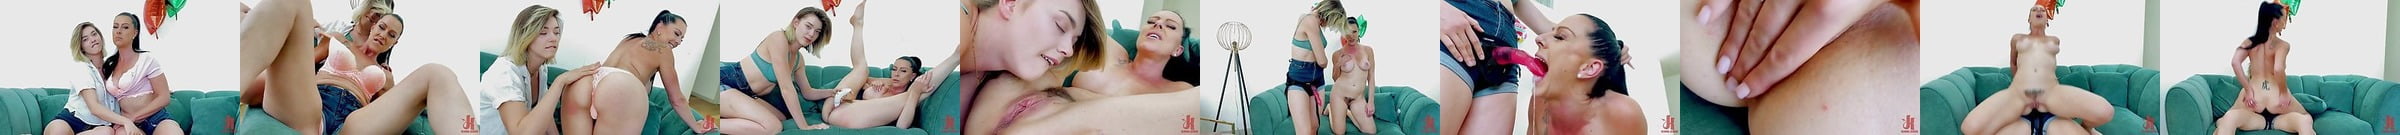 Celebrity Lesbian Porn Videos Xhamster